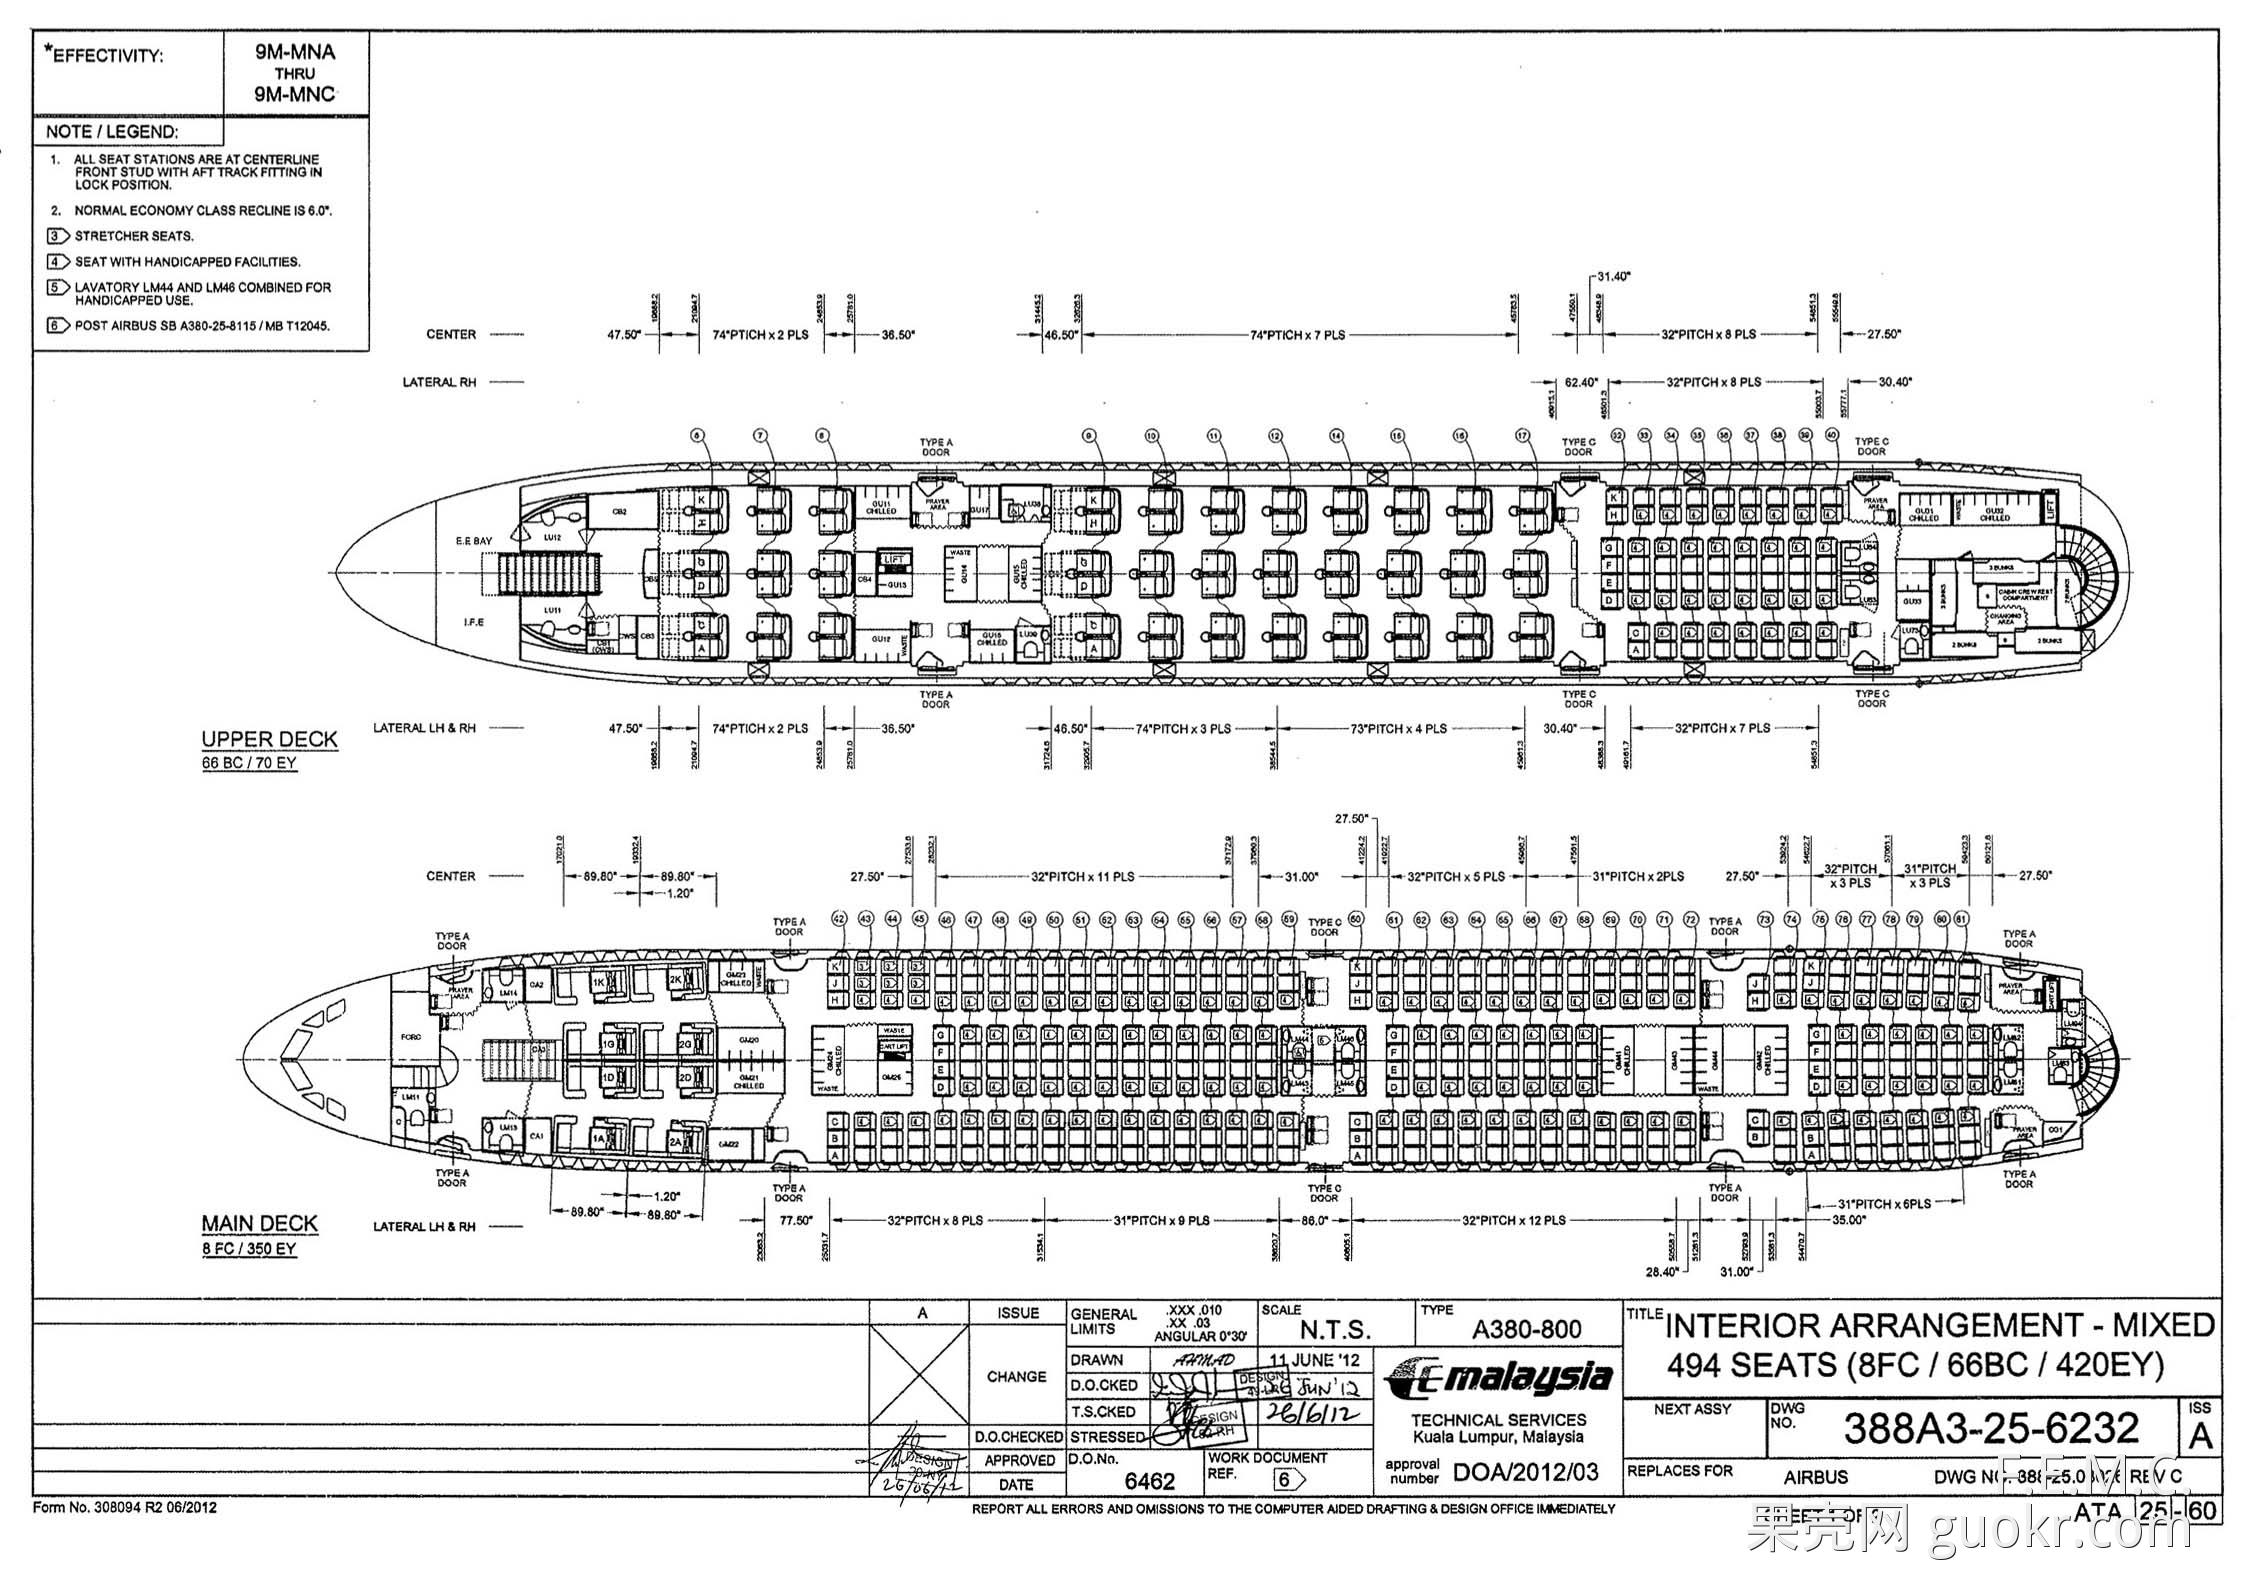 上图:a380-800的客舱座位布置图,可以明显看出单位服务面积的差异.